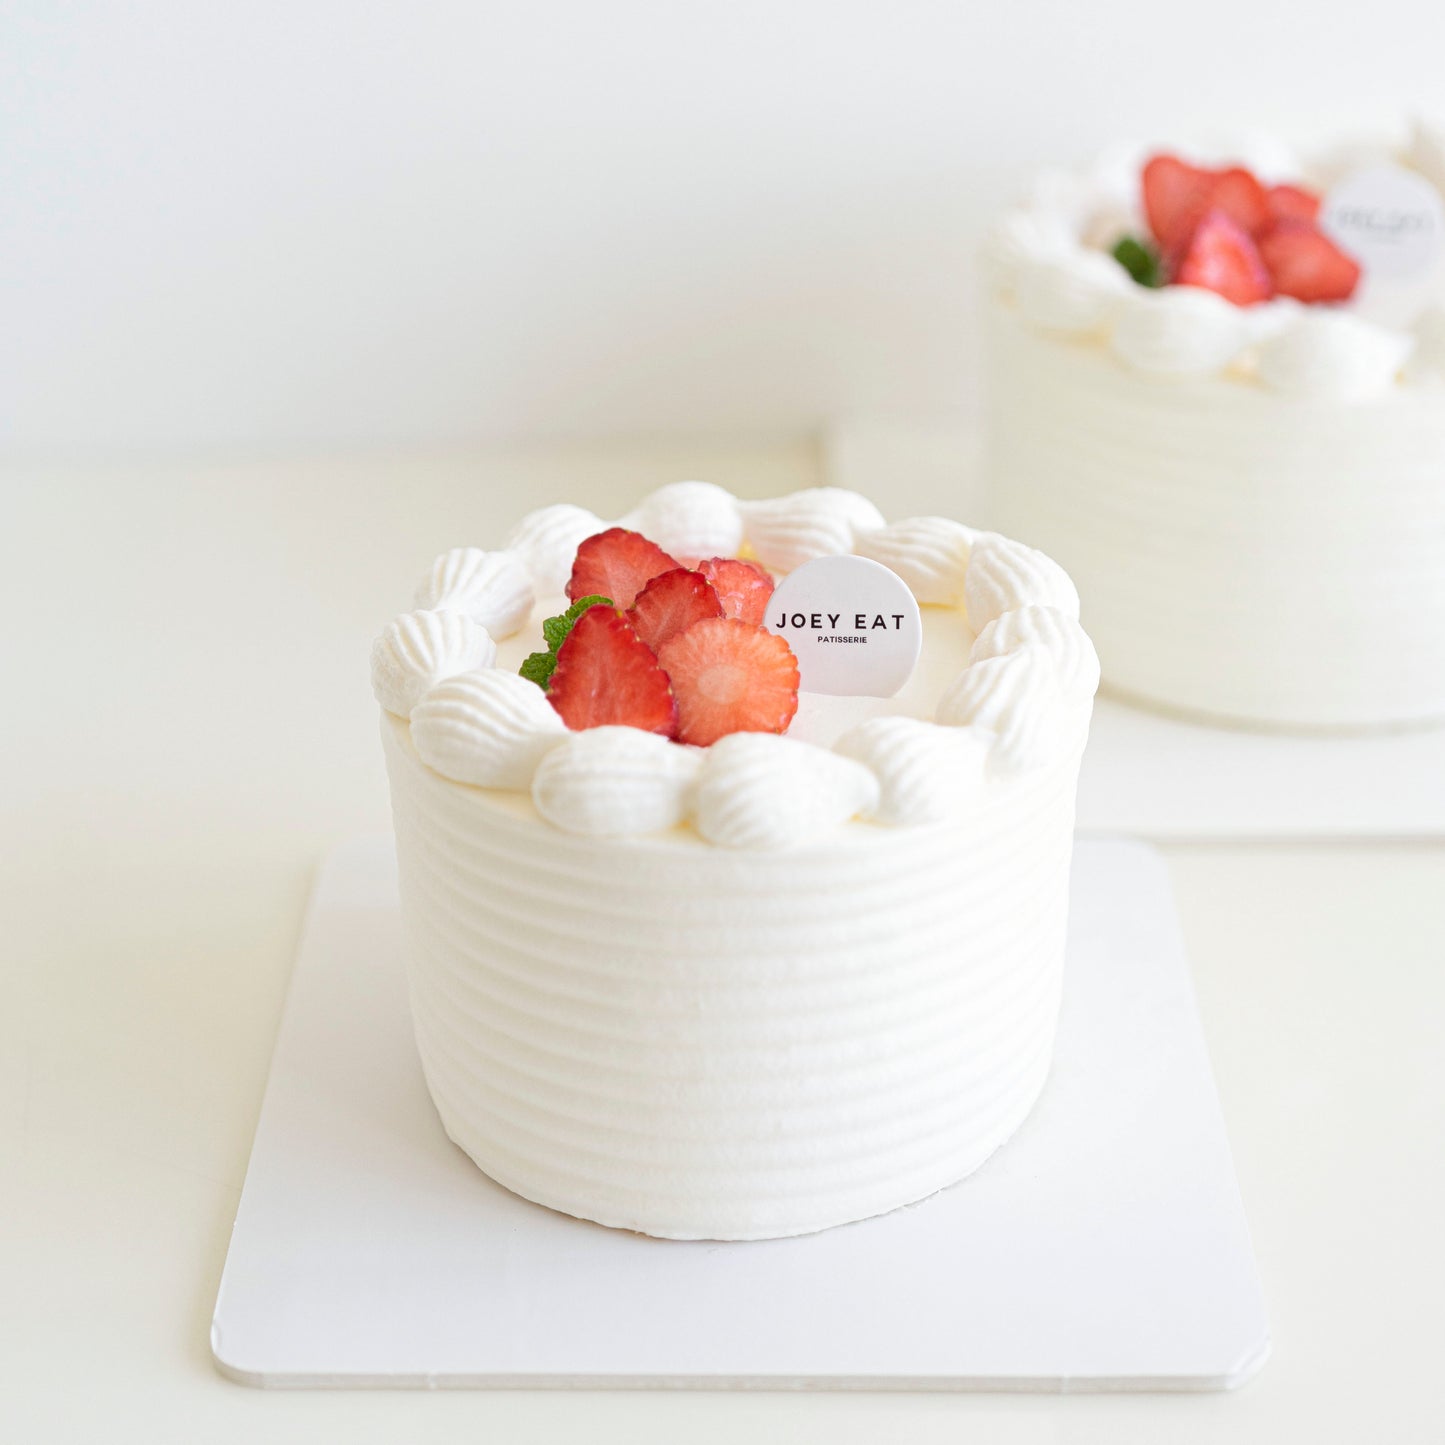 Strawberry Shortcake – Joey Eat Patisserie